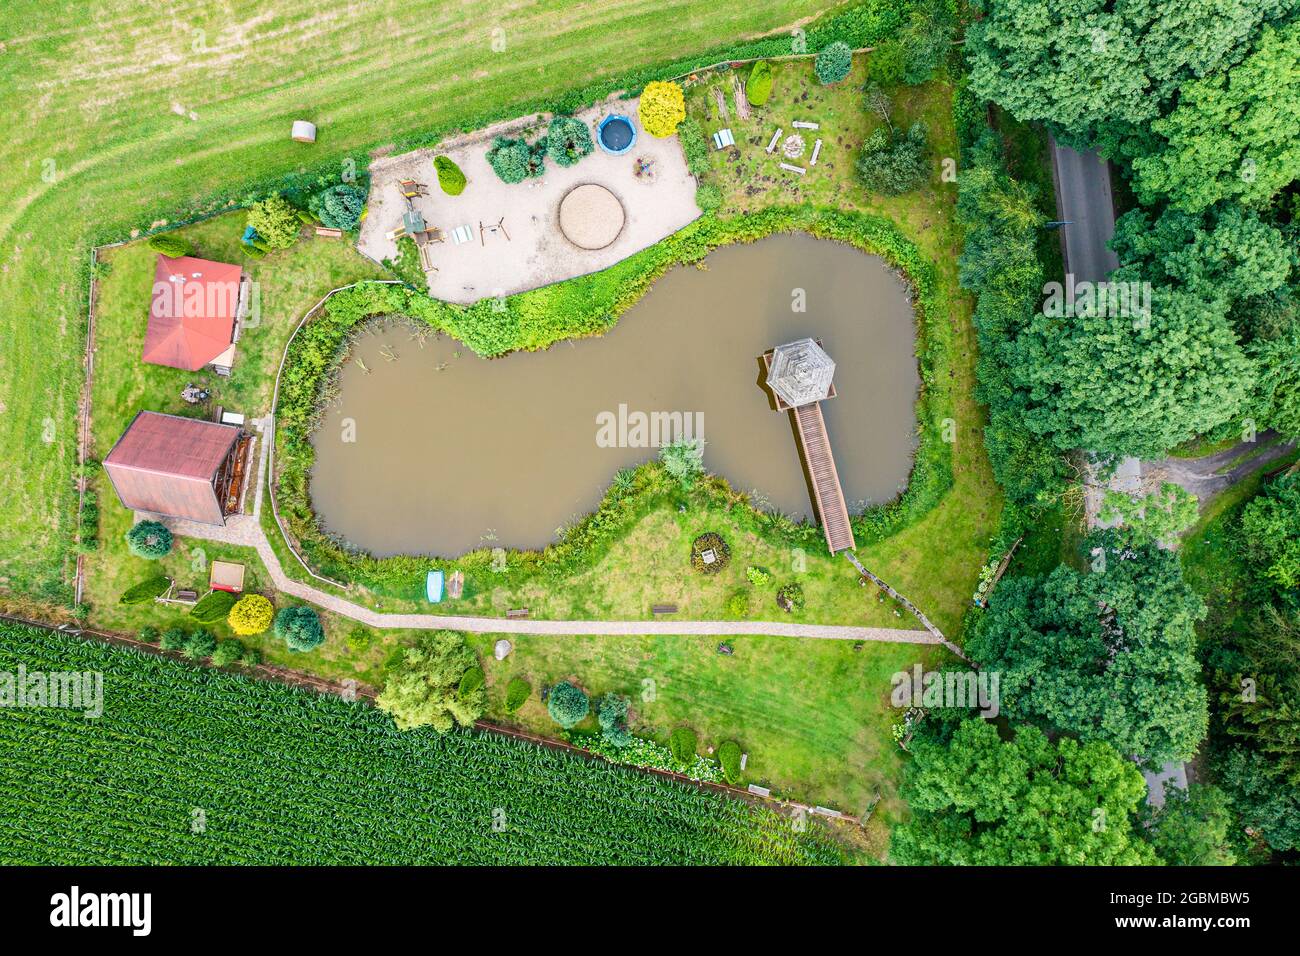 Vista aerea della casa di campagna dal piccolo lago, luogo idilliaco per il chillout Foto Stock